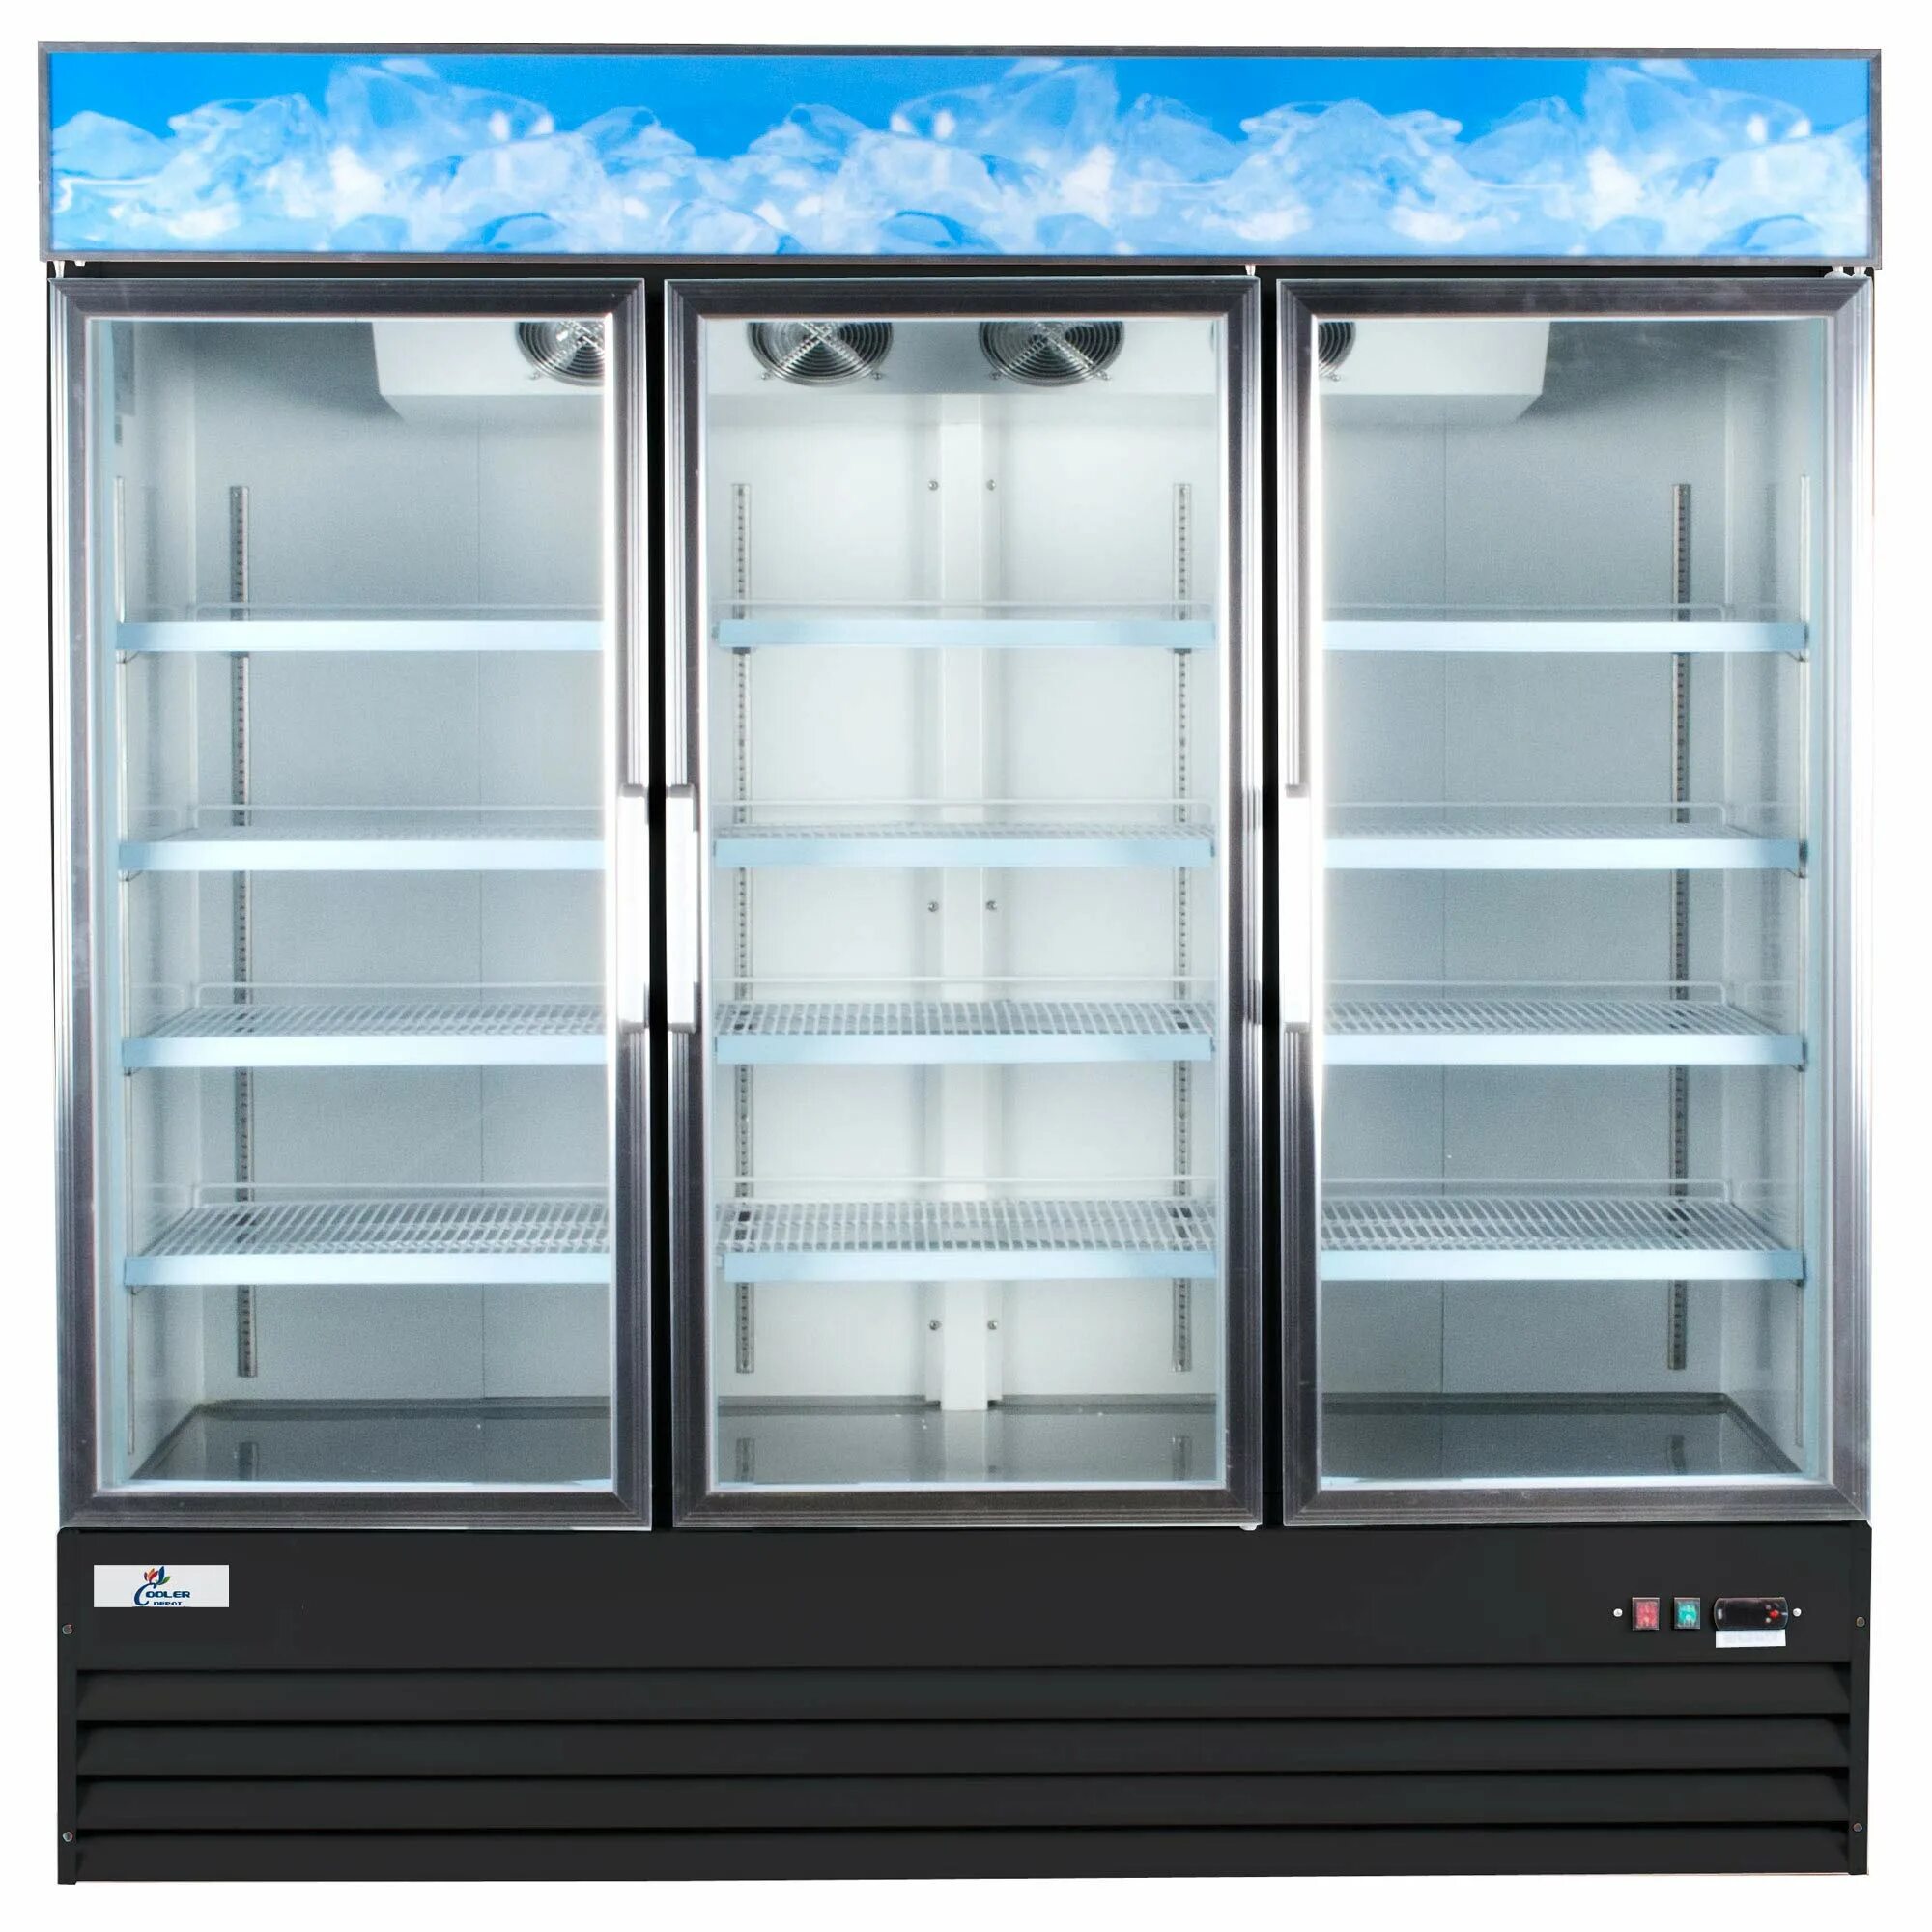 Холодильный шкаф Cold s700. Шкаф холодильный Carboma f700. Холодильный шкаф Carboma r560 (приложение 3.2.). Шкаф холодильный dm110sd-s. Холодильные витрины под